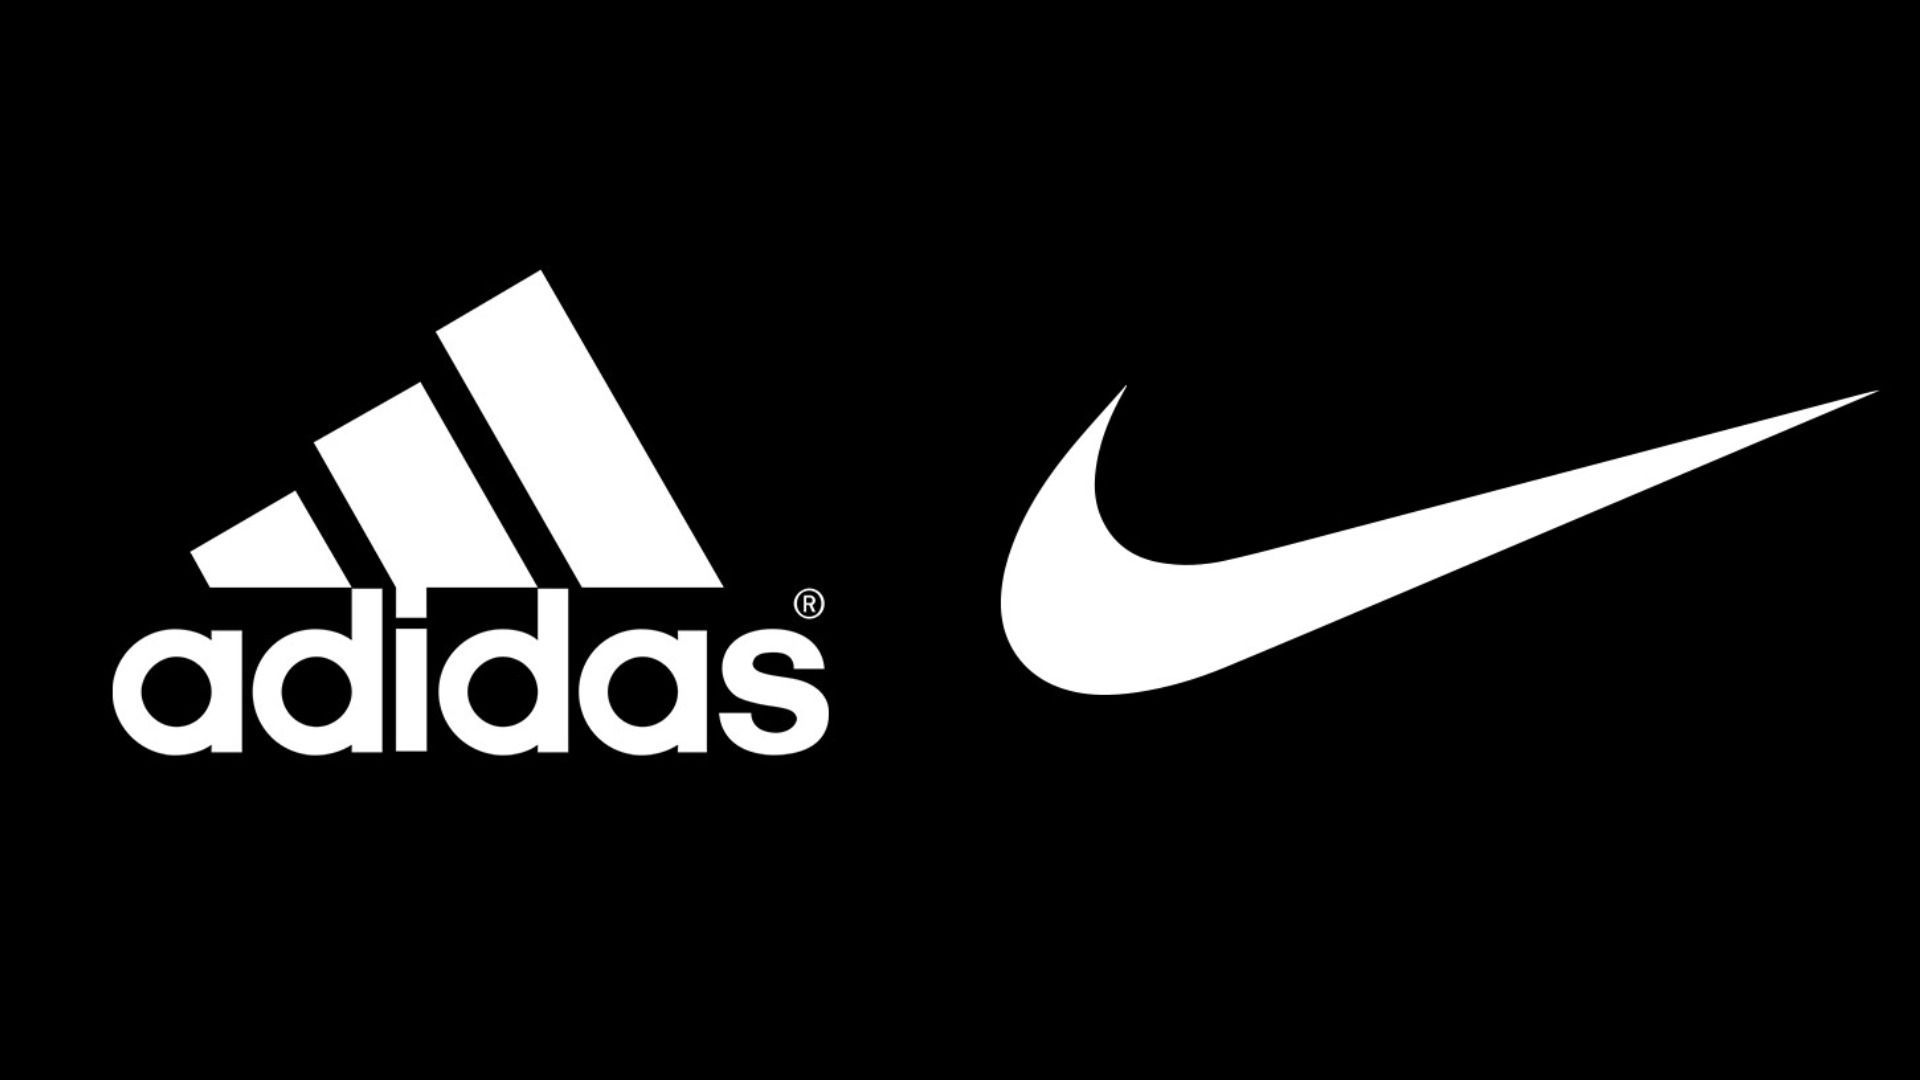 Este es el de la marca de Adidas su rivalidad con Nike - Vandal Random